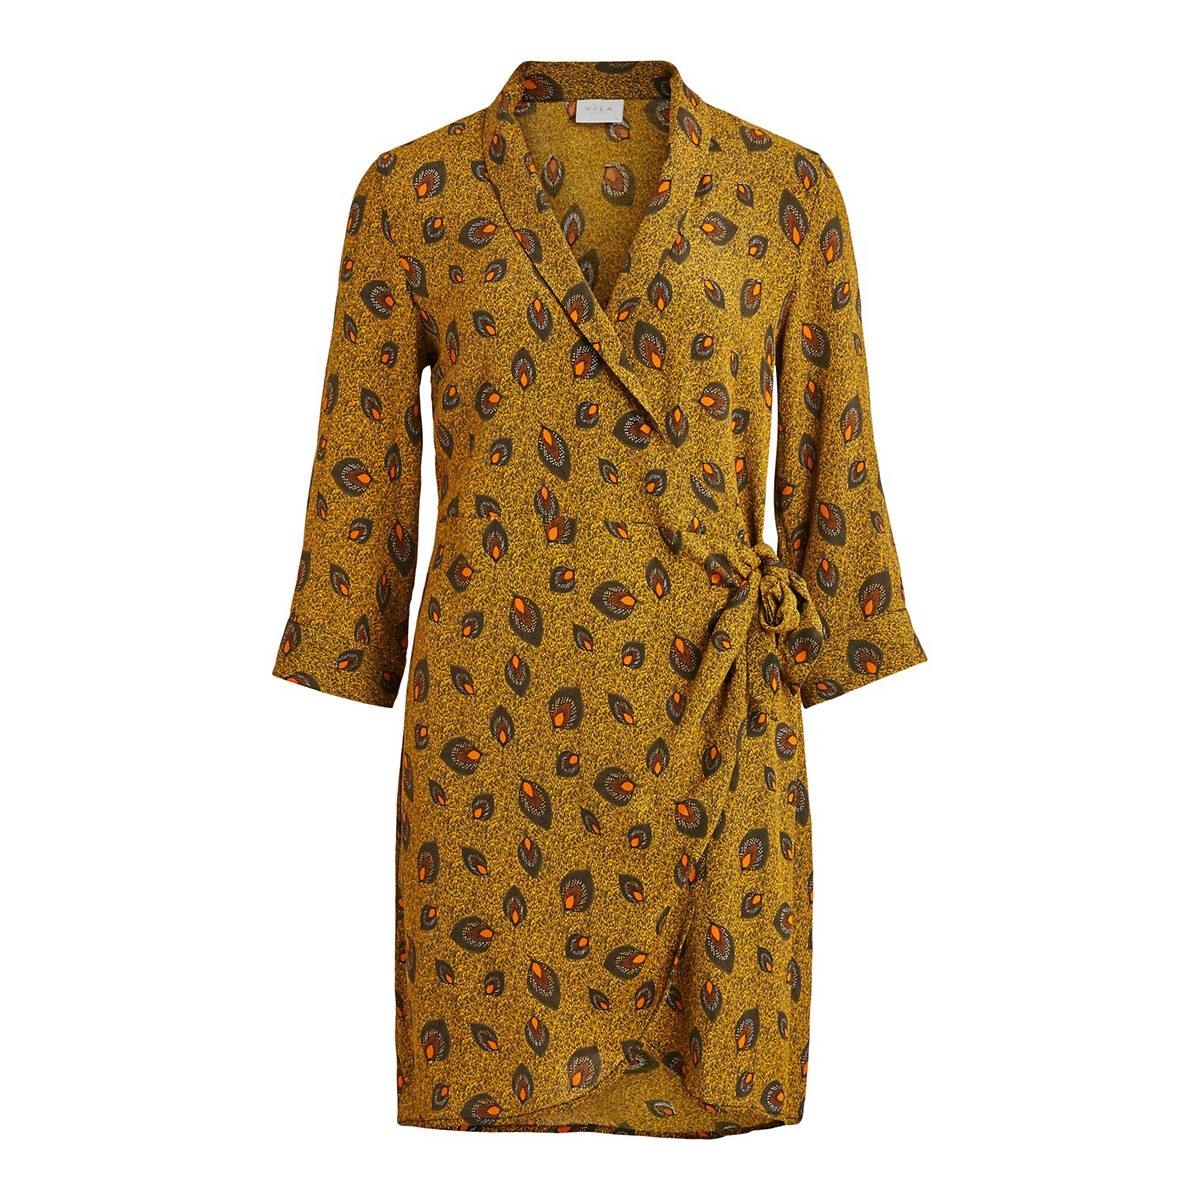 Платье La Redoute С запахом с принтом рукава 36 (FR) - 42 (RUS) желтый, размер 36 (FR) - 42 (RUS) С запахом с принтом рукава 36 (FR) - 42 (RUS) желтый - фото 5